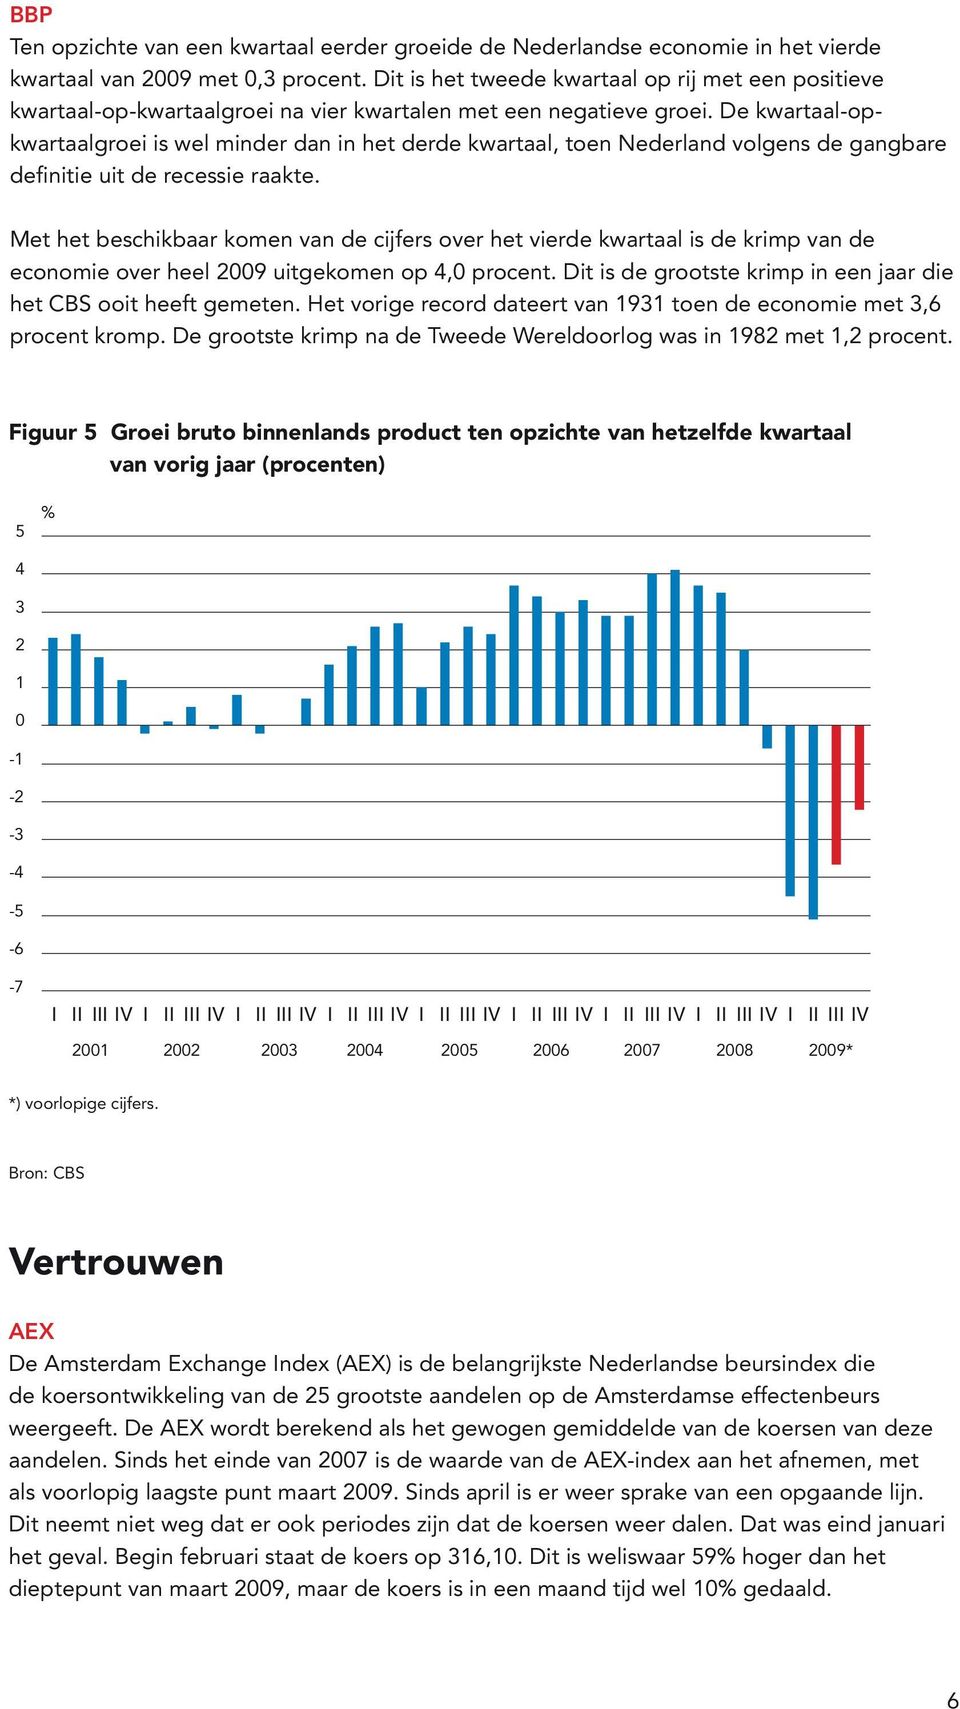 De kwartaal-opkwartaalgroei is wel minder dan in het derde kwartaal, toen Nederland volgens de gangbare definitie uit de recessie raakte.